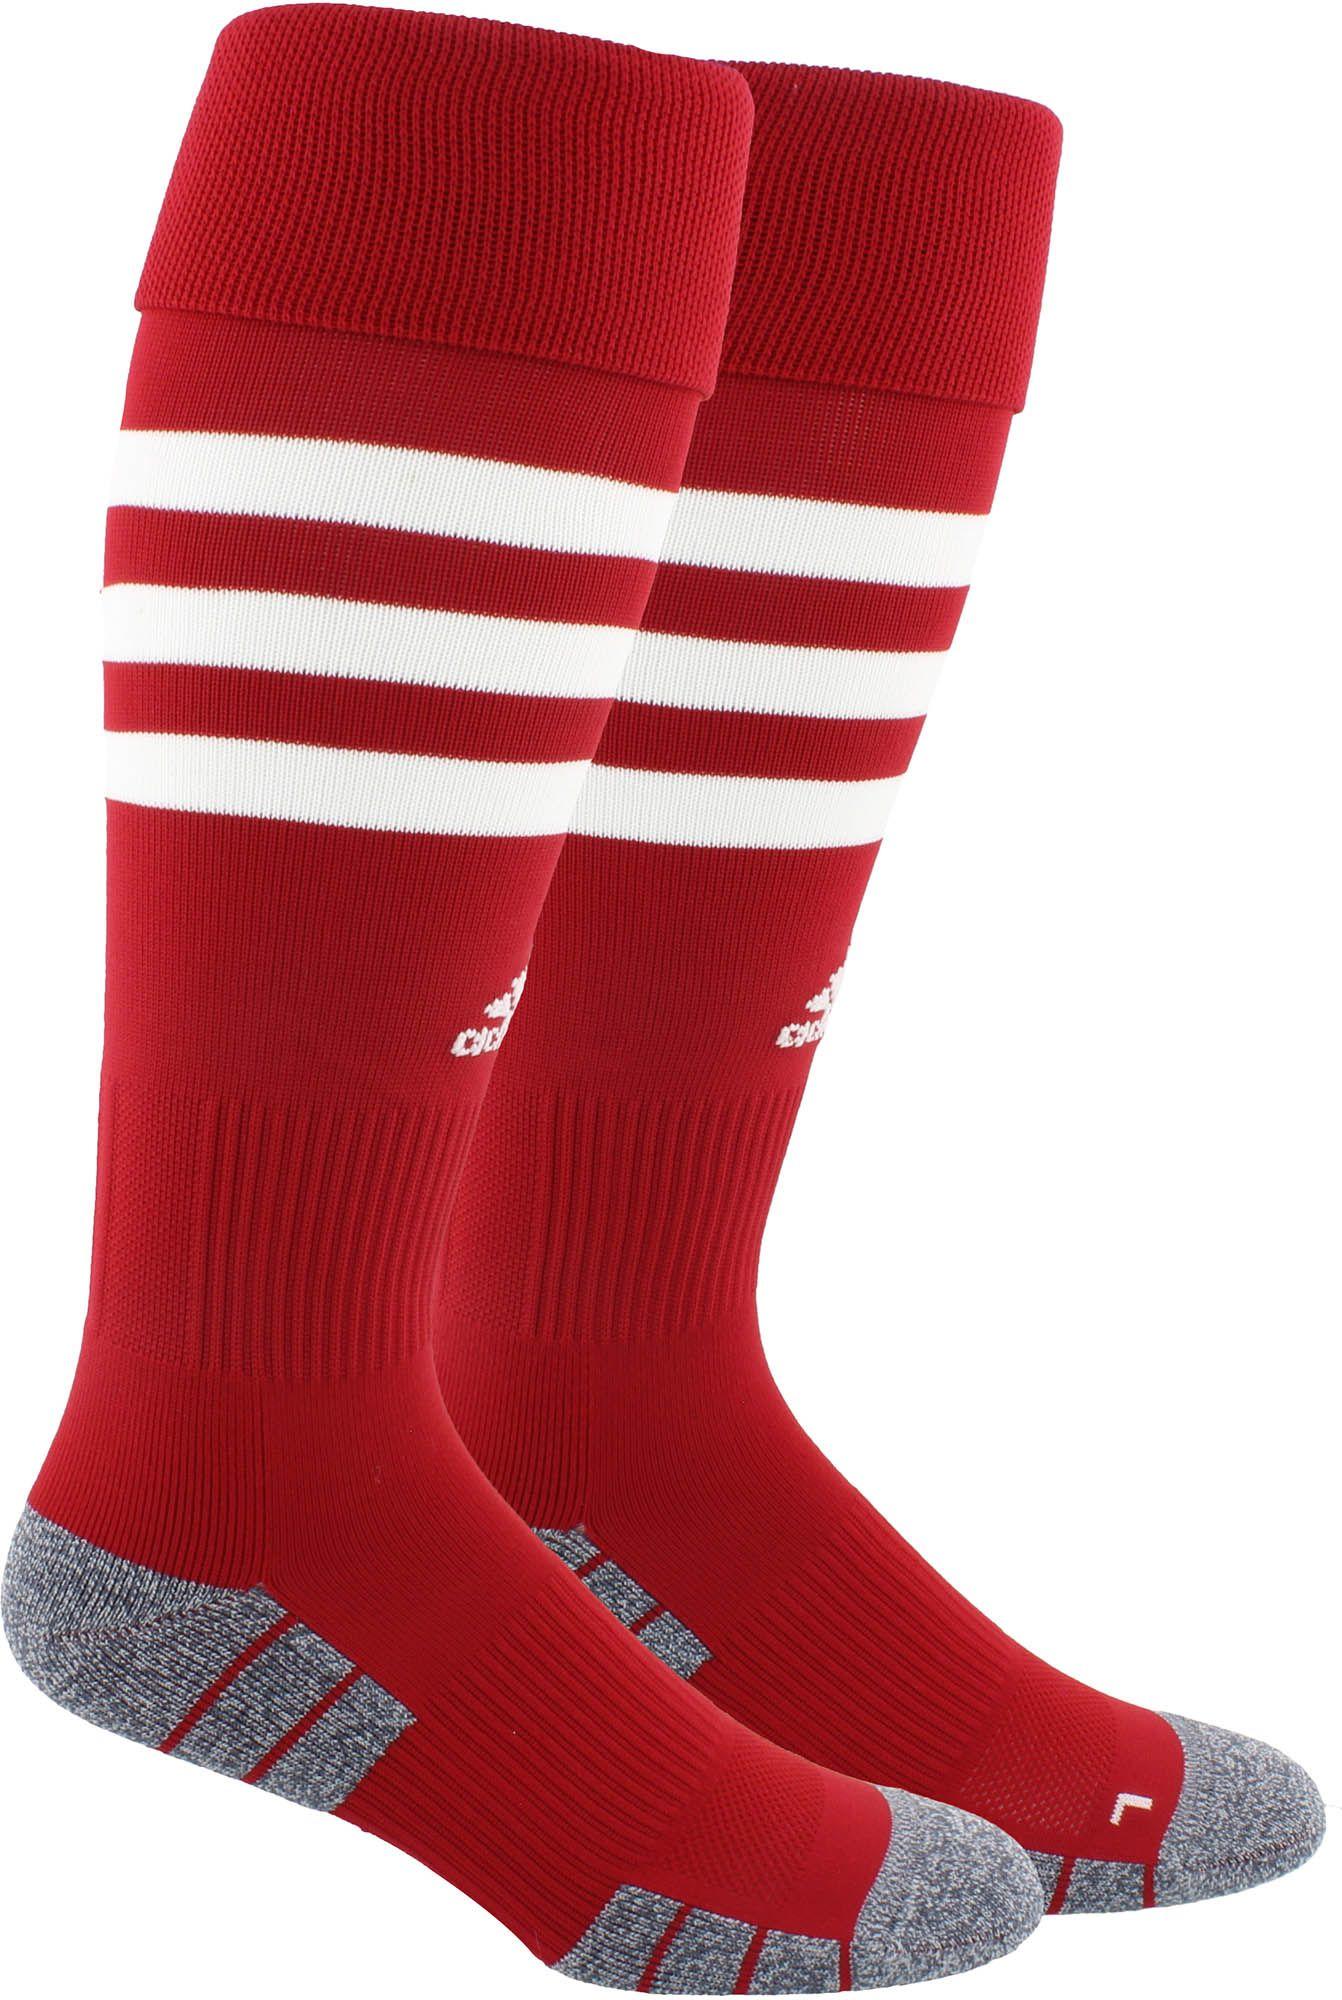 adidas 3-stripe Hoop Soccer Socks in Red - Lyst